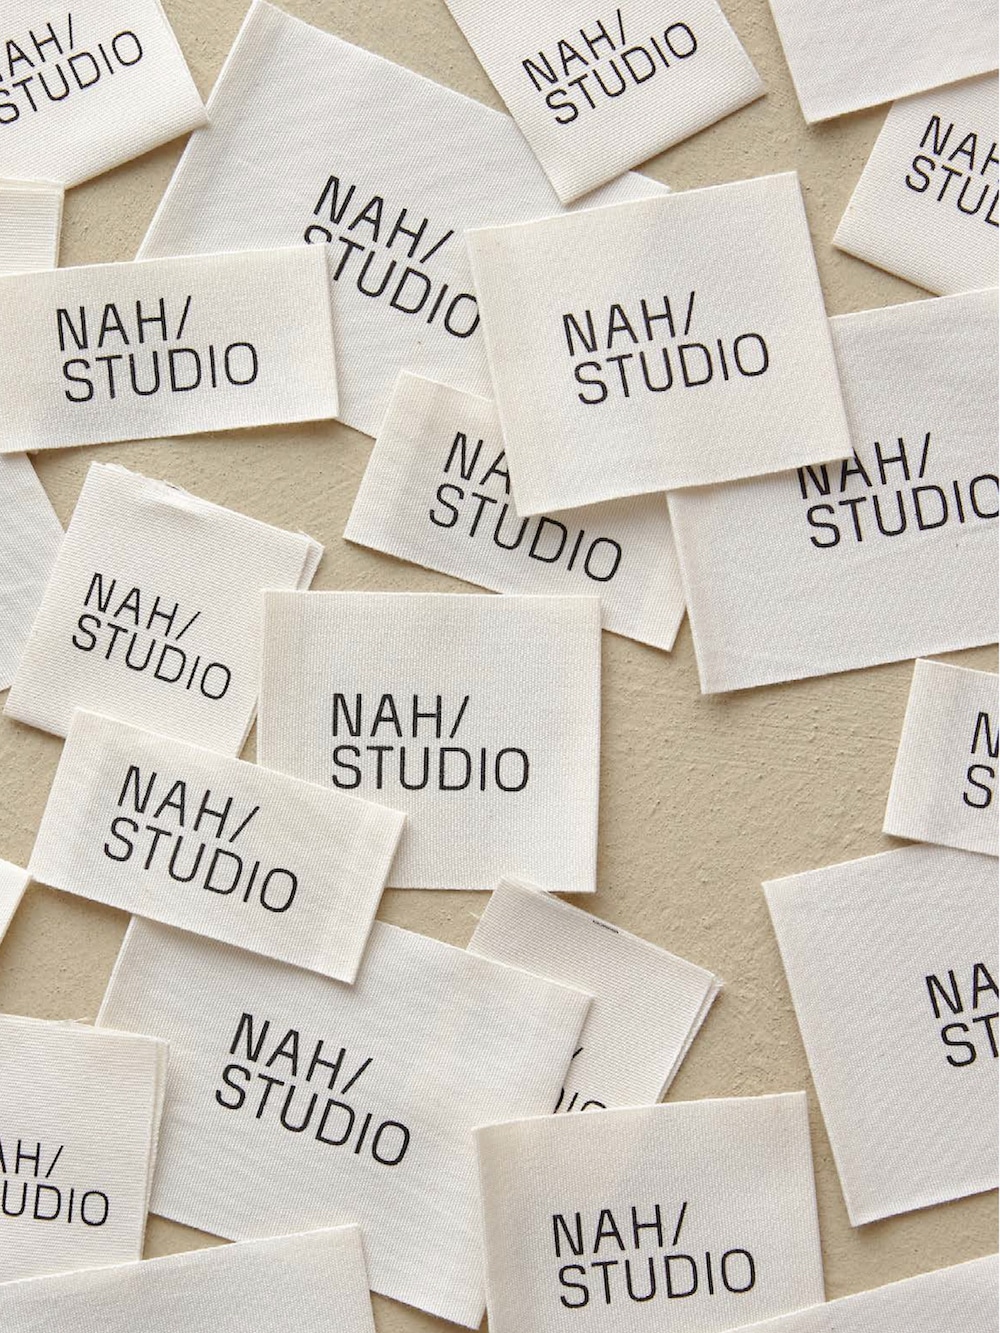 Studio Oeding gestaltet NAH/STUDIO: Webetiketten mit Schriftlogo